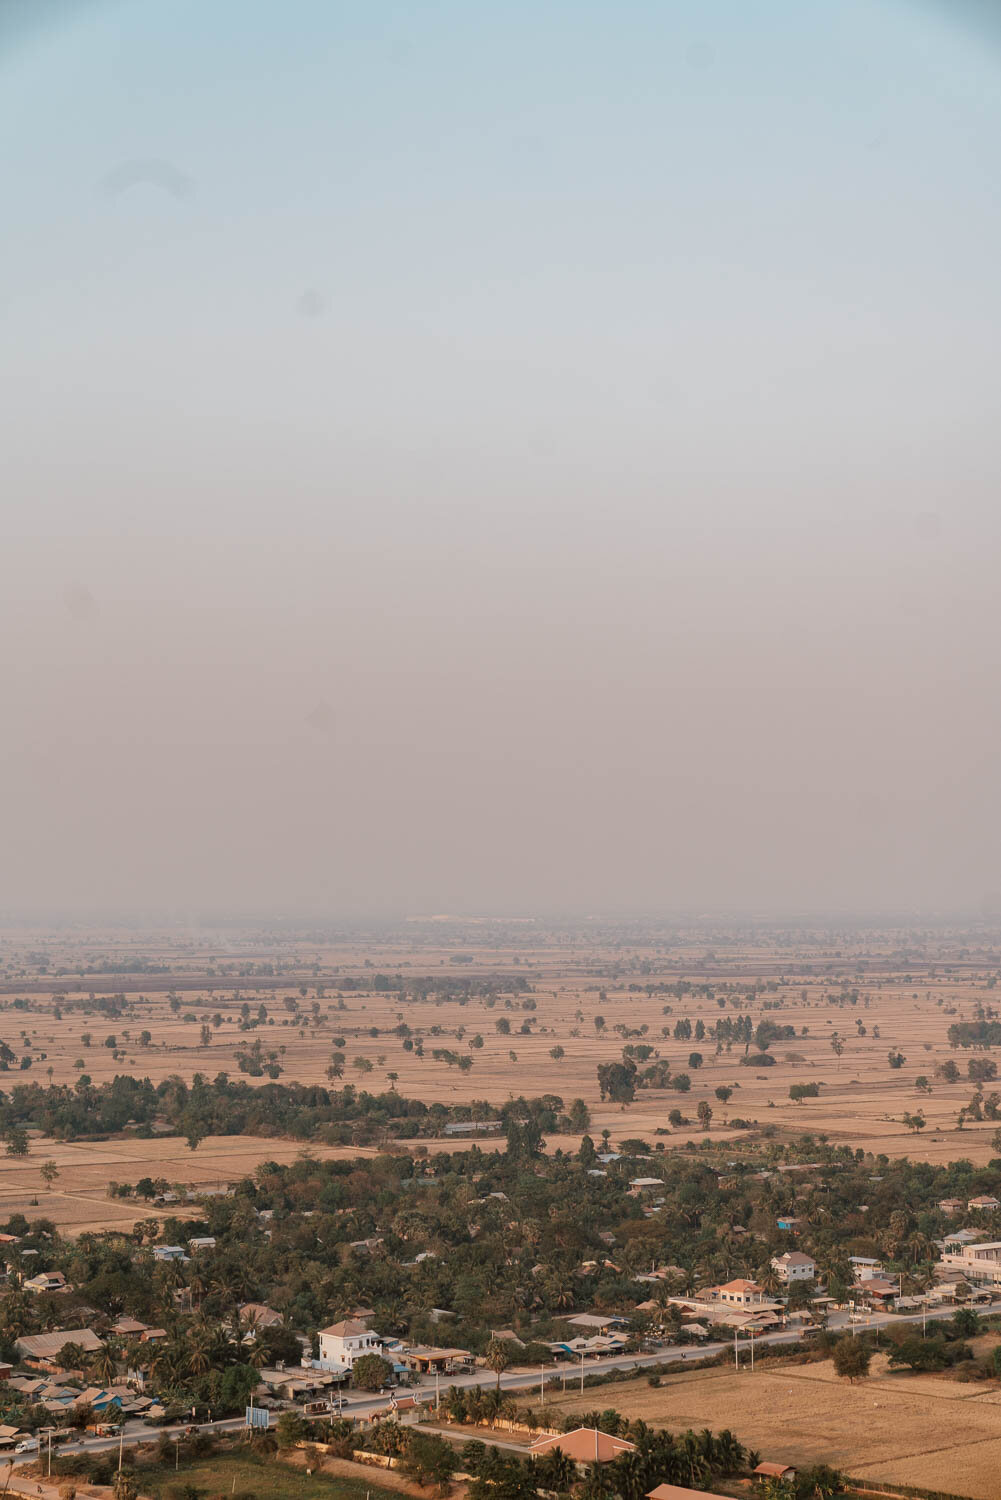 View over Battambang, Cambodia